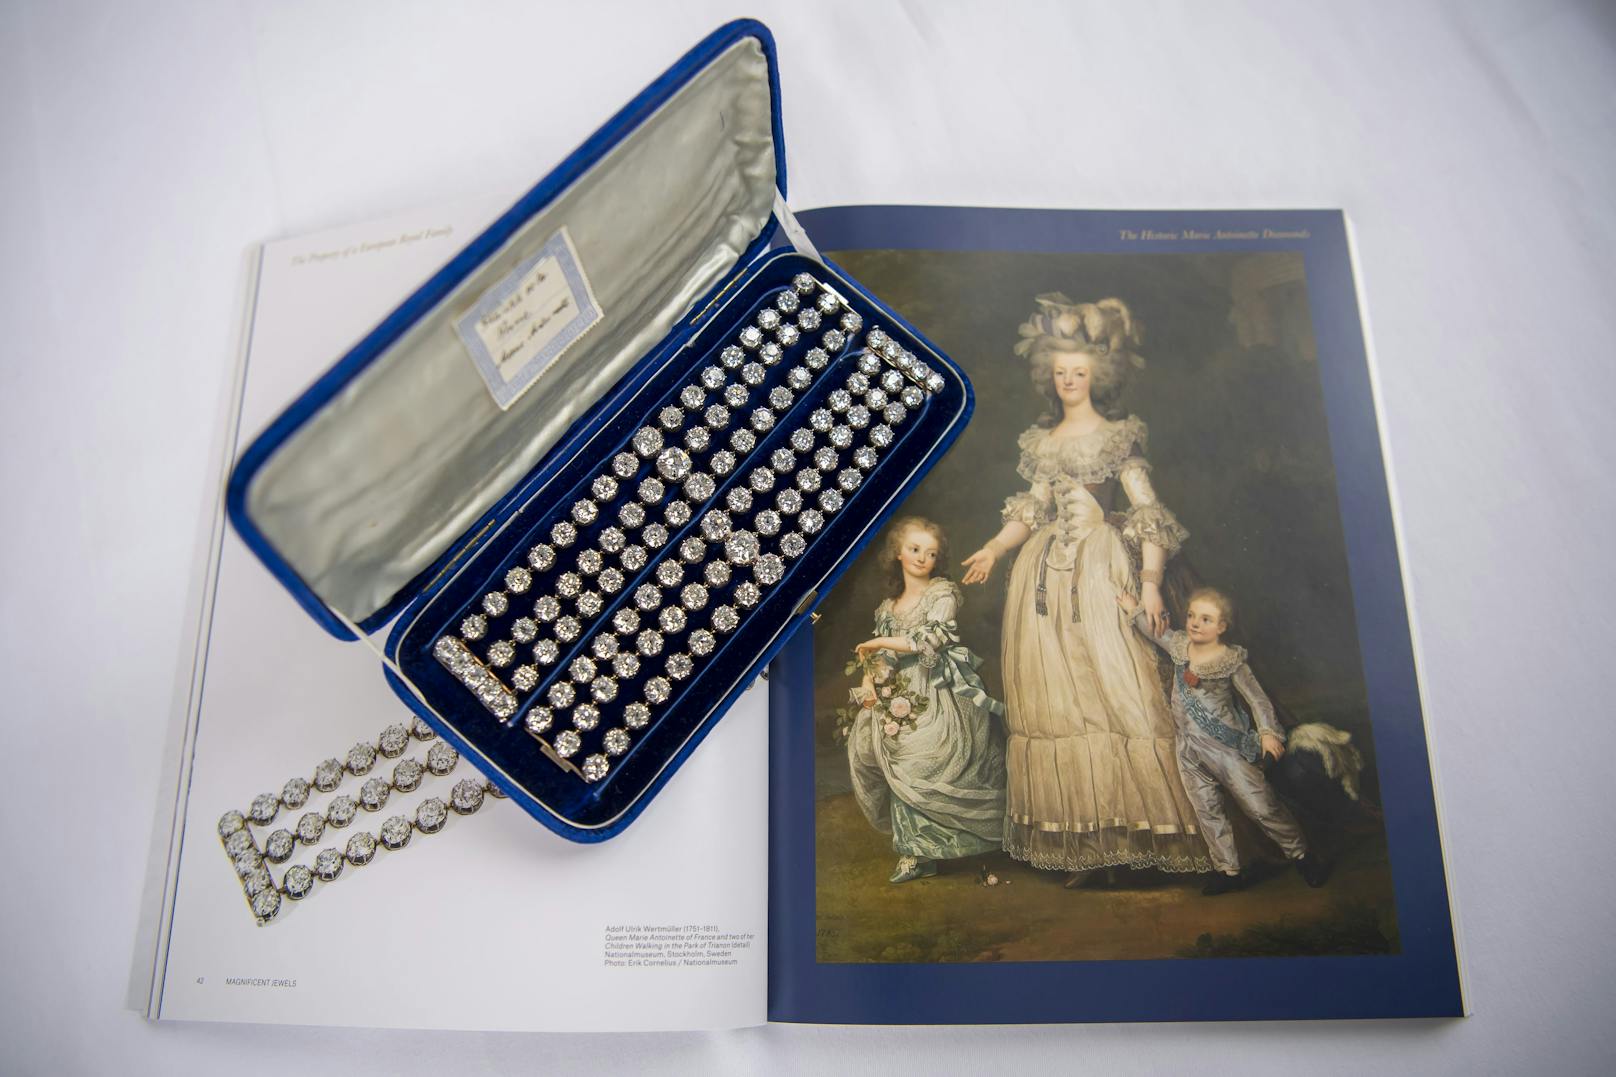 Nach Angaben von Christie's hatte Marie-Antoinette die beiden<a href="https://www.heute.at/s/hier-tragt-wayne-rooneys-frau-millionen-spazieren-26703664">&nbsp;Diamant-Armbänder </a>im Jahr 1776 bei einem Pariser Juwelier in Auftrag gegeben.